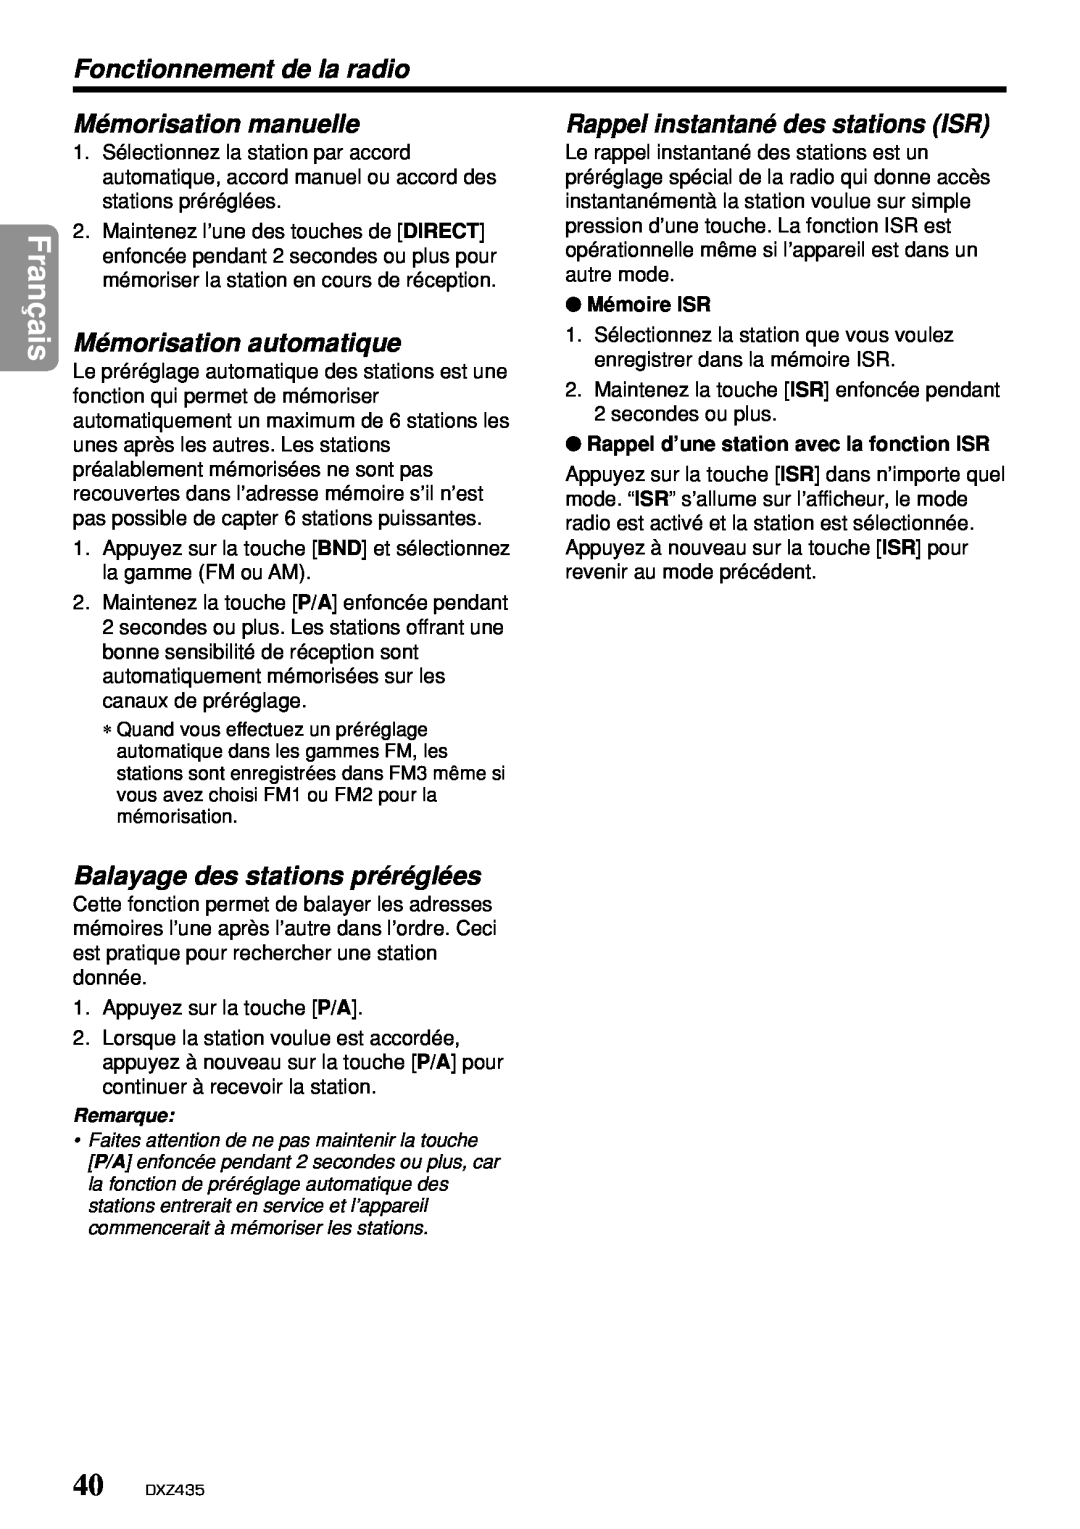 Clarion DXZ435 owner manual Franç, Fonctionnement de la radio, Mémorisation manuelle, Rappel instantané des stations ISR 